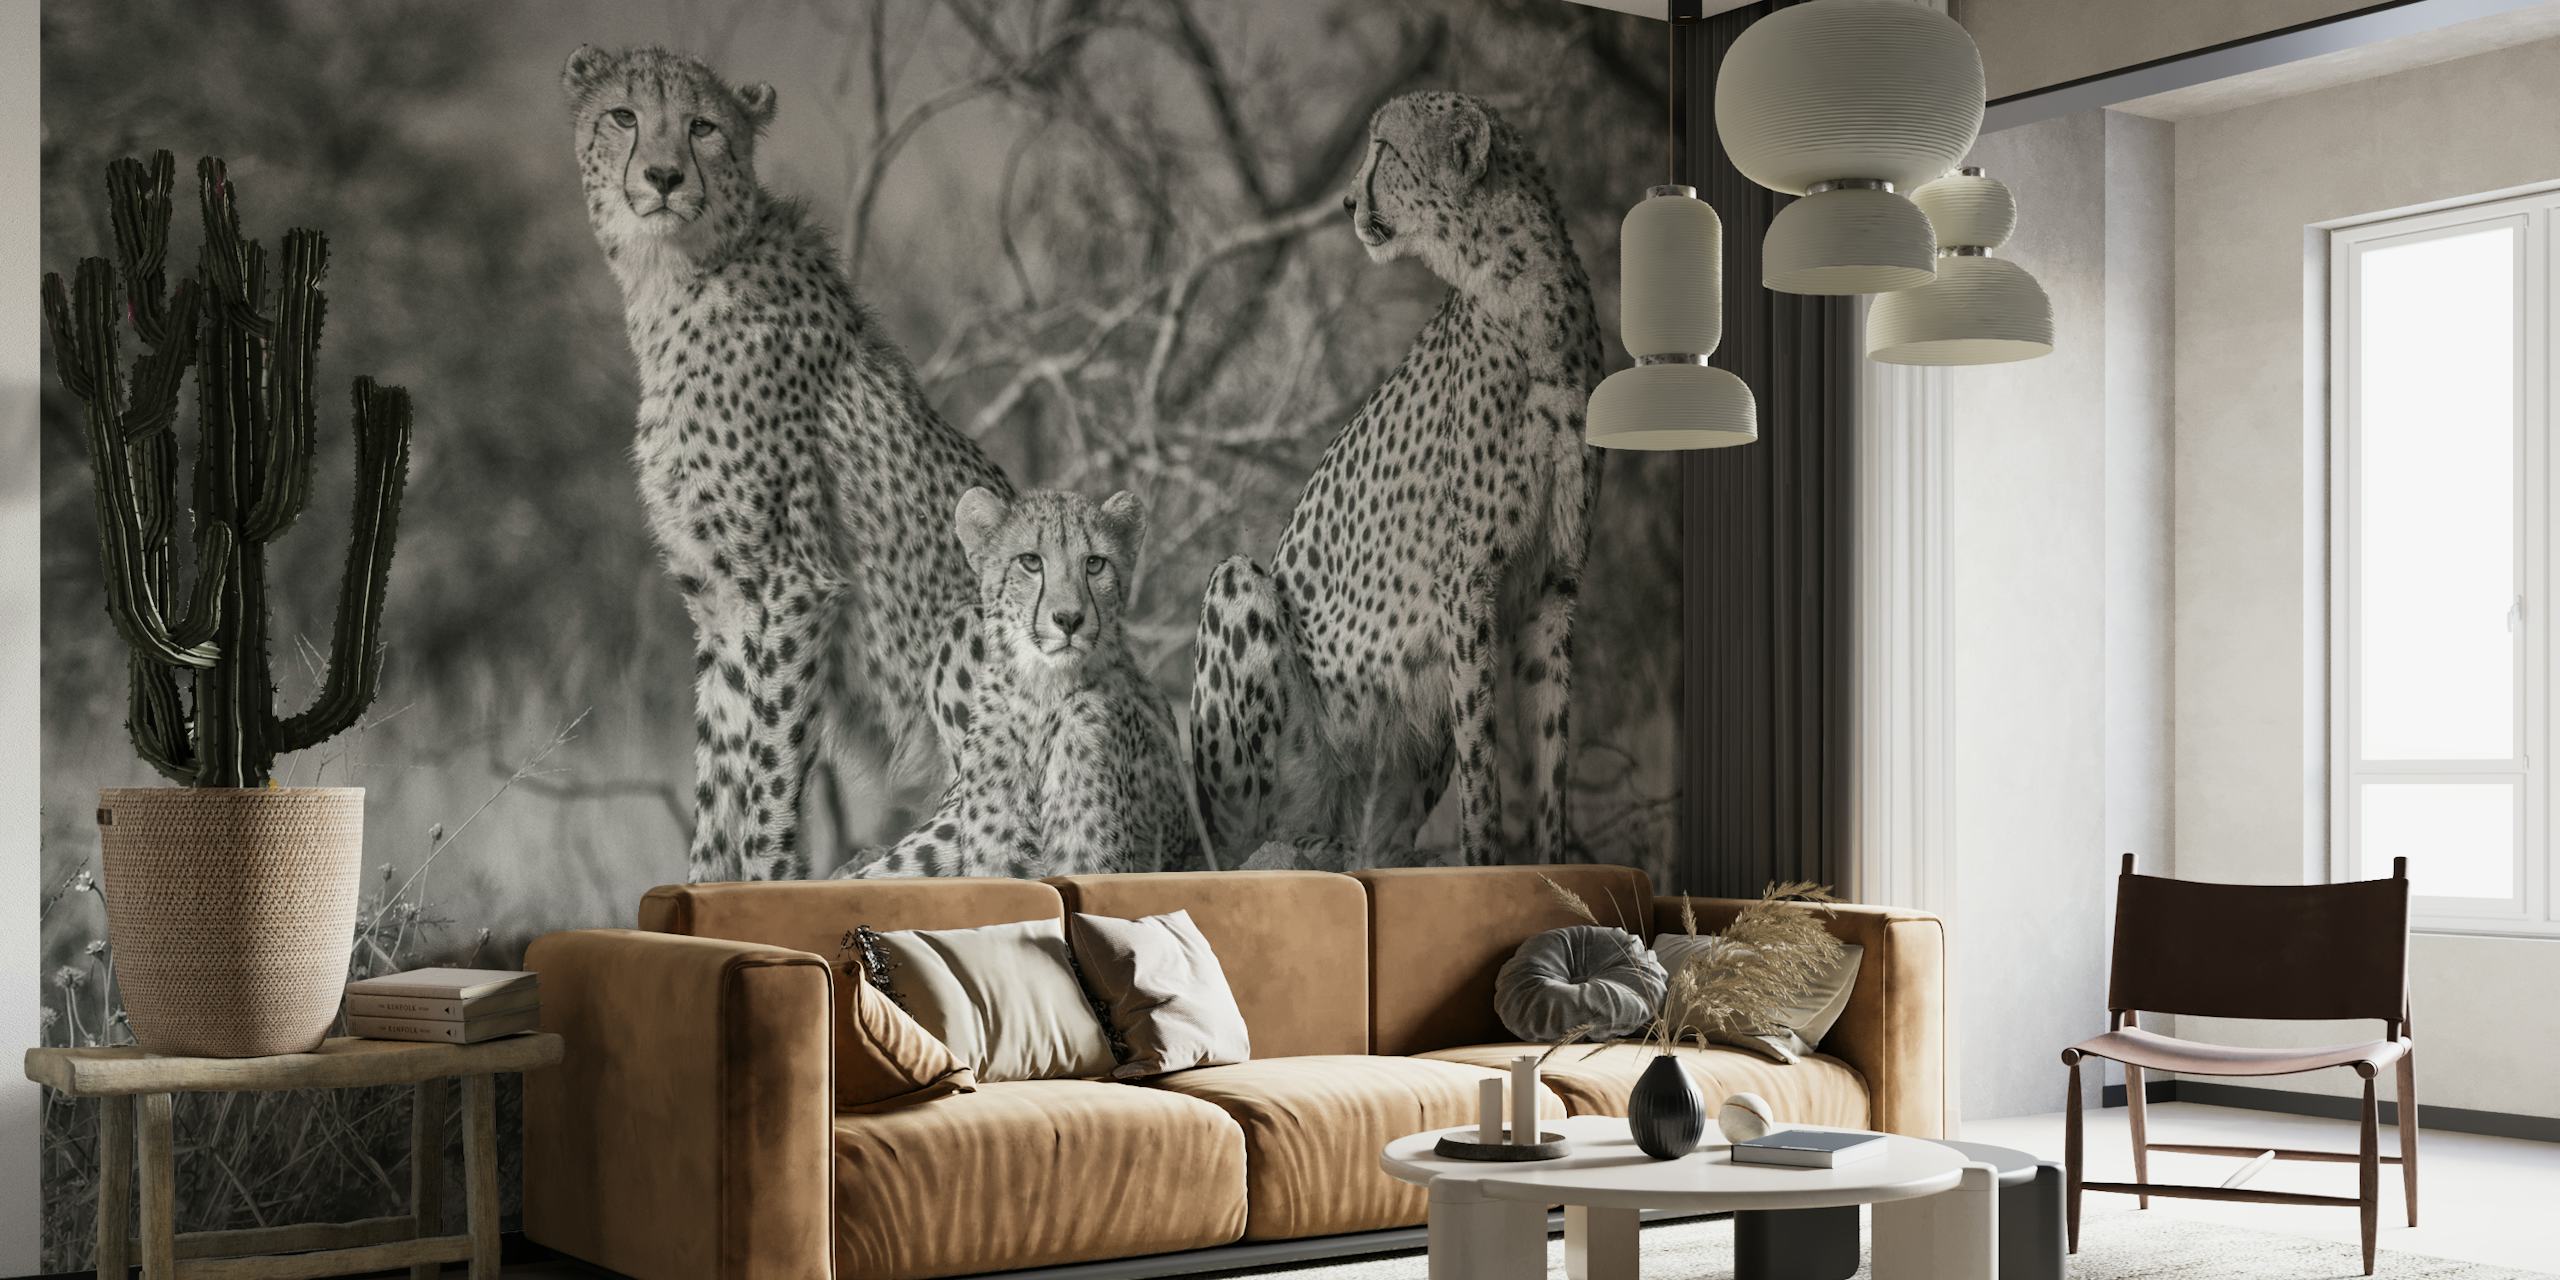 Czarno-biała fototapeta przedstawiająca trzy gepardy